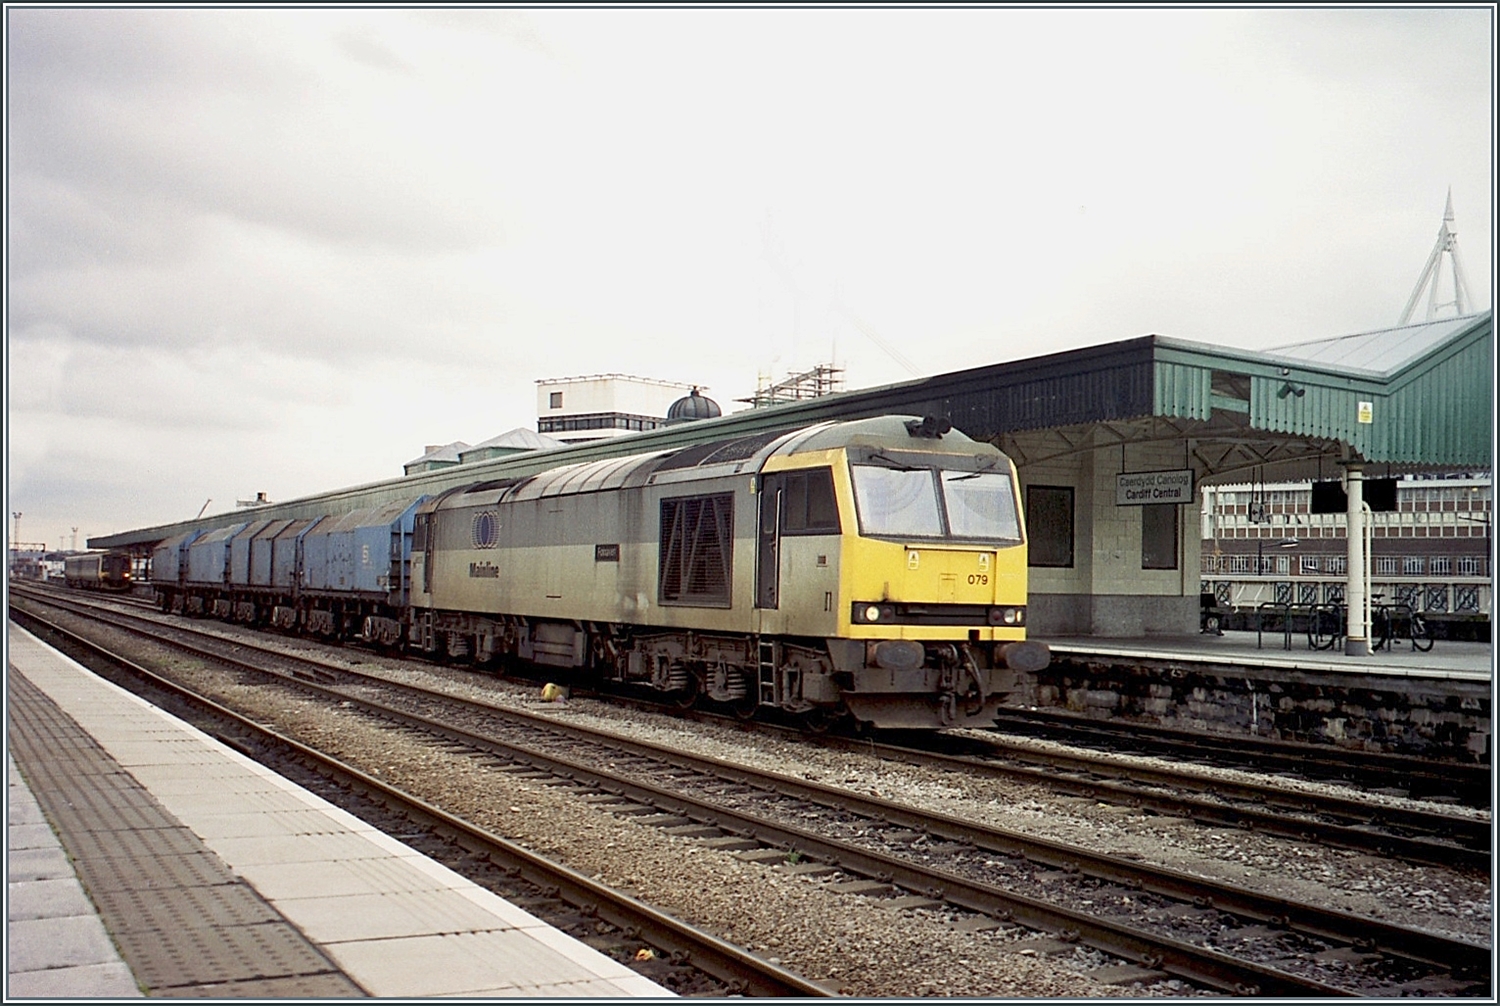 Die  Mainline  Class 60 079 fährt mit einem Telehauben- Güterzug durch den Bahnhof von Cardiff Central /Caerdydd Canolog. 

Analogbild vom November 2000 